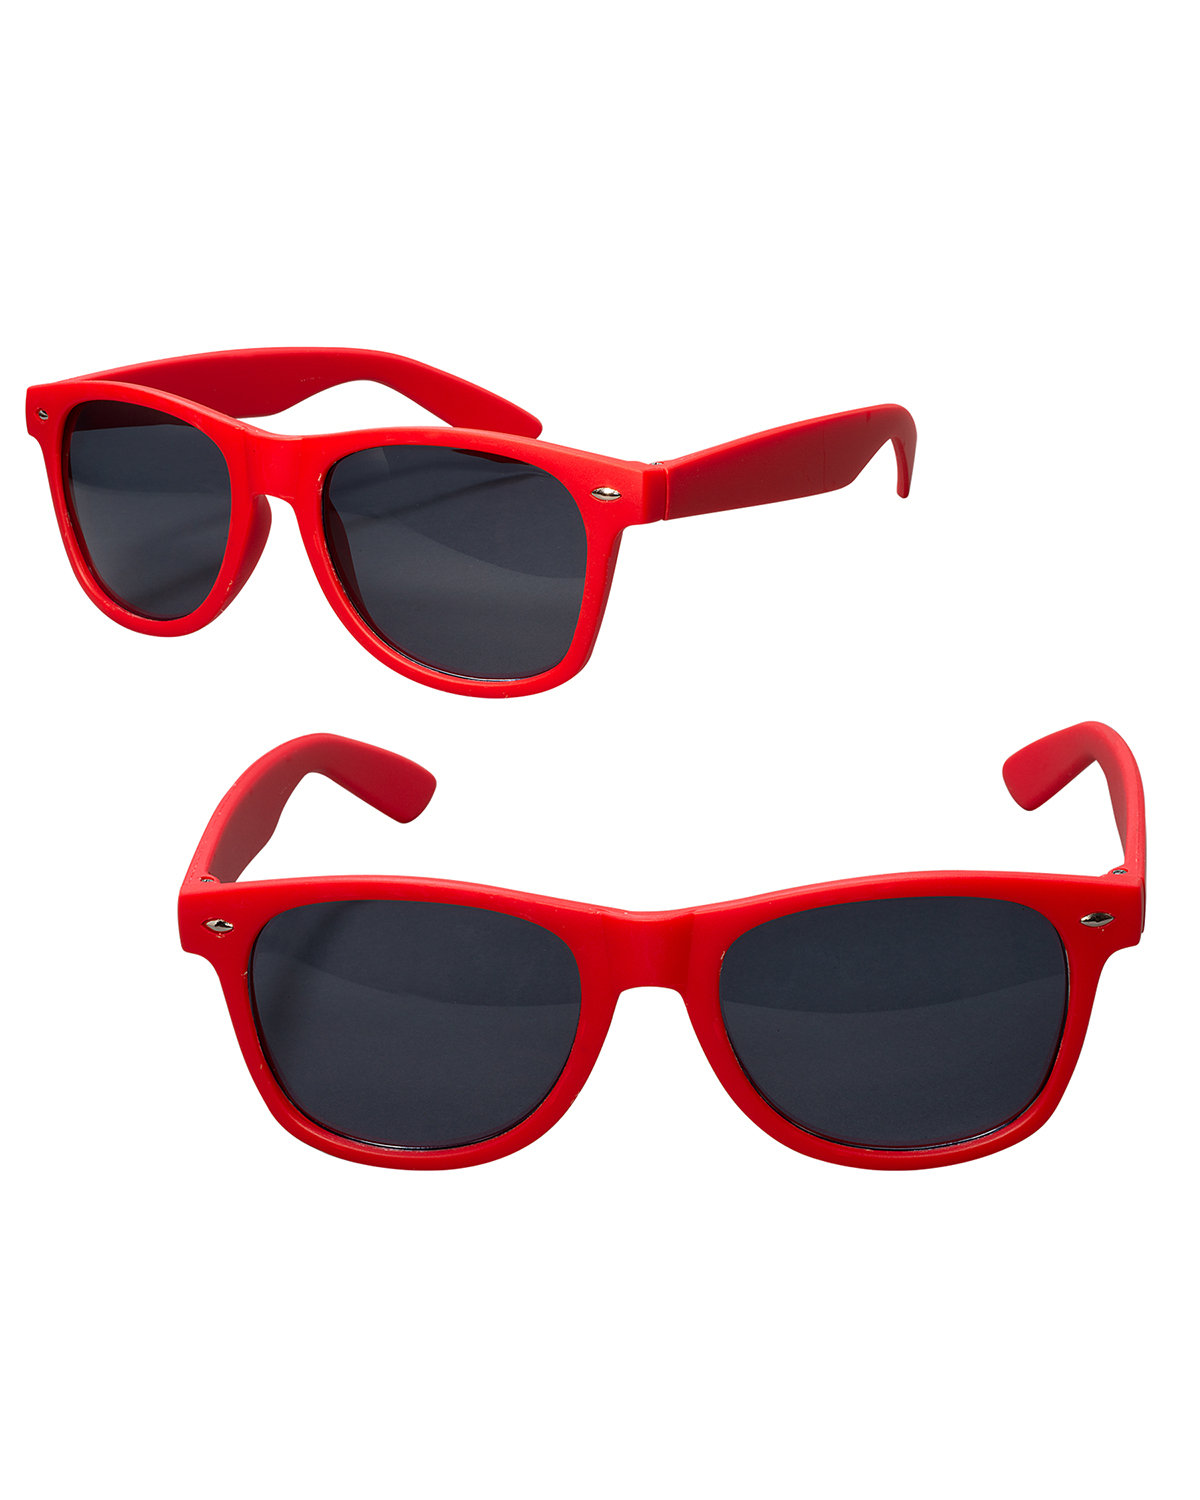 Prime Line Rubberized Finish Fashion Sunglasses red 